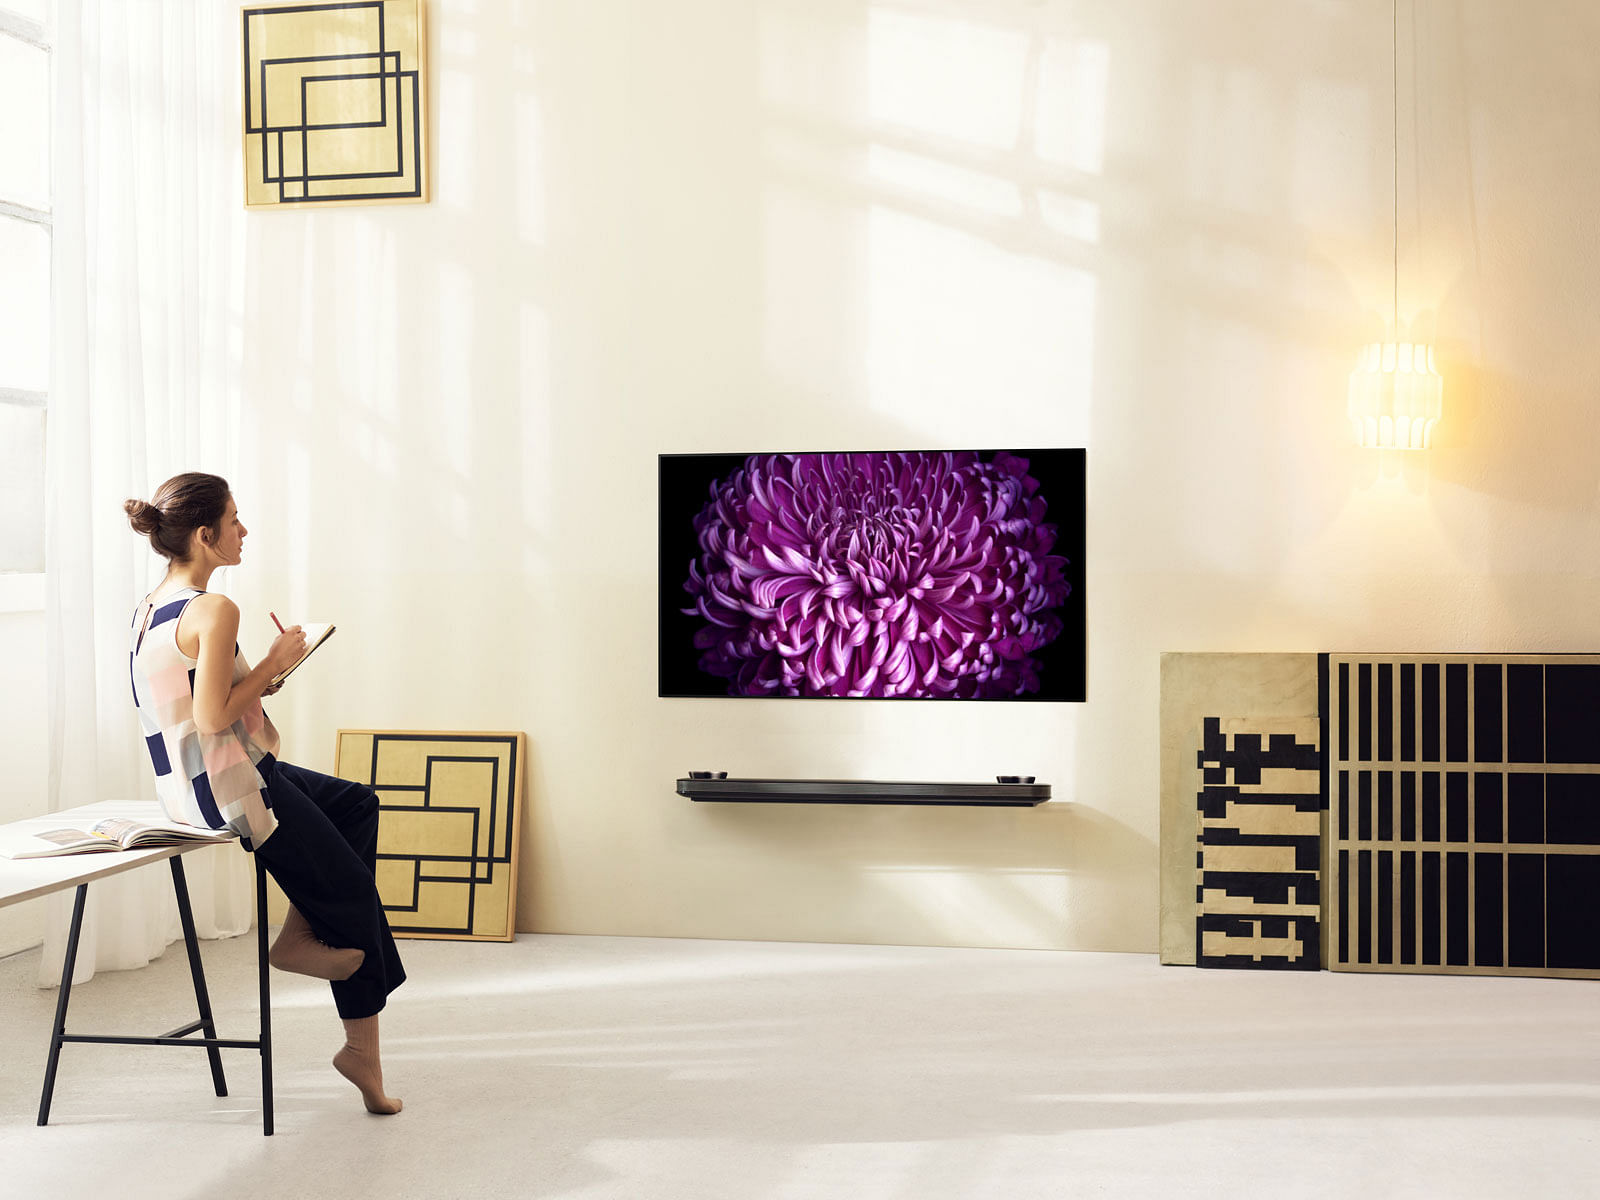 LG OLED TV W